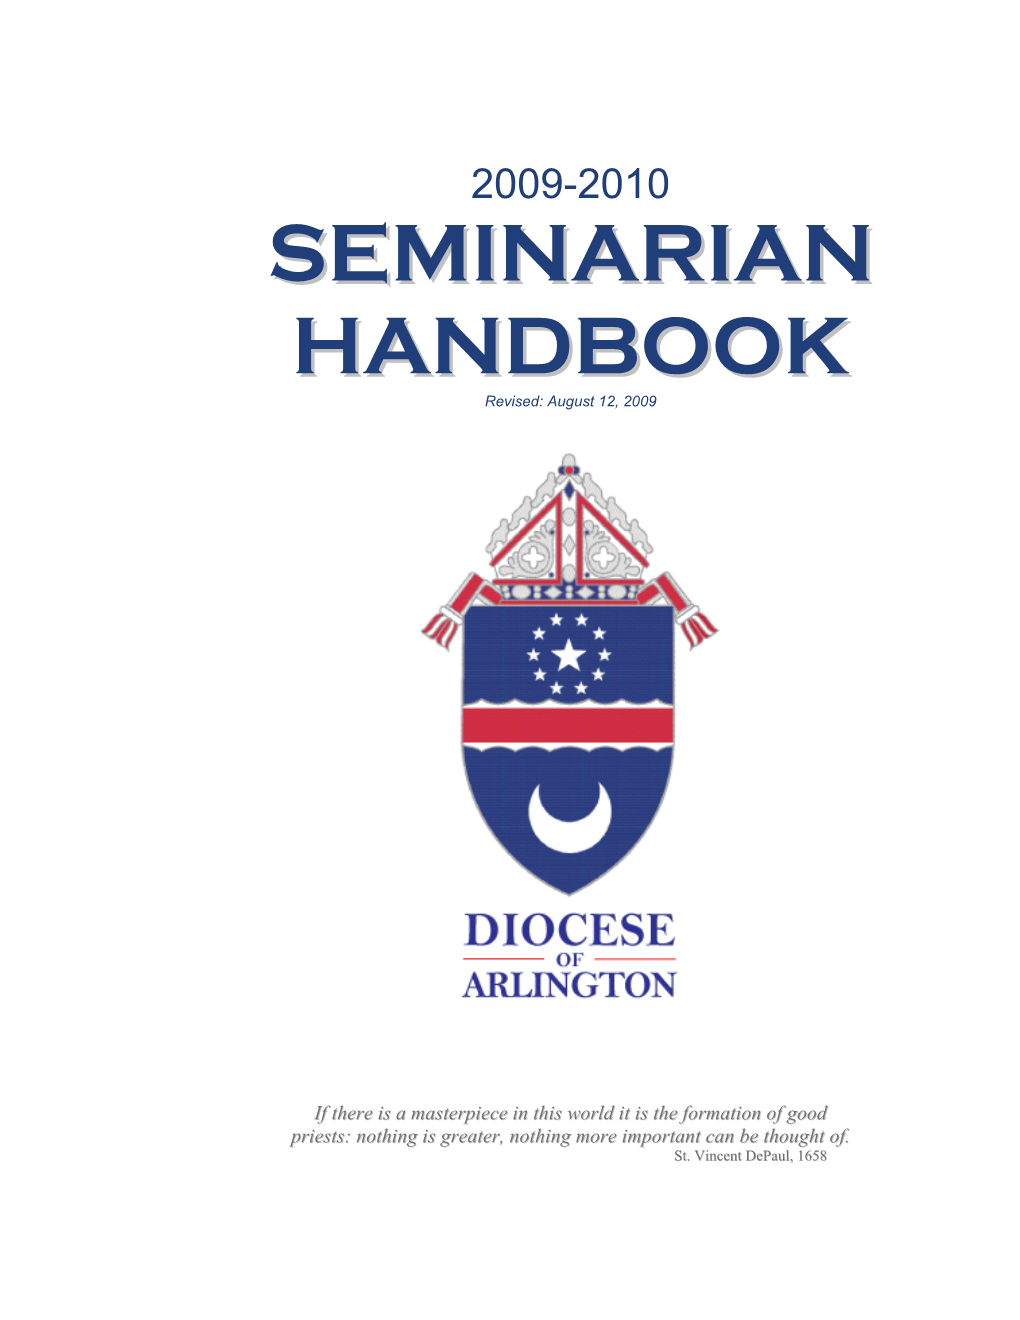 Handbook for Seminarians